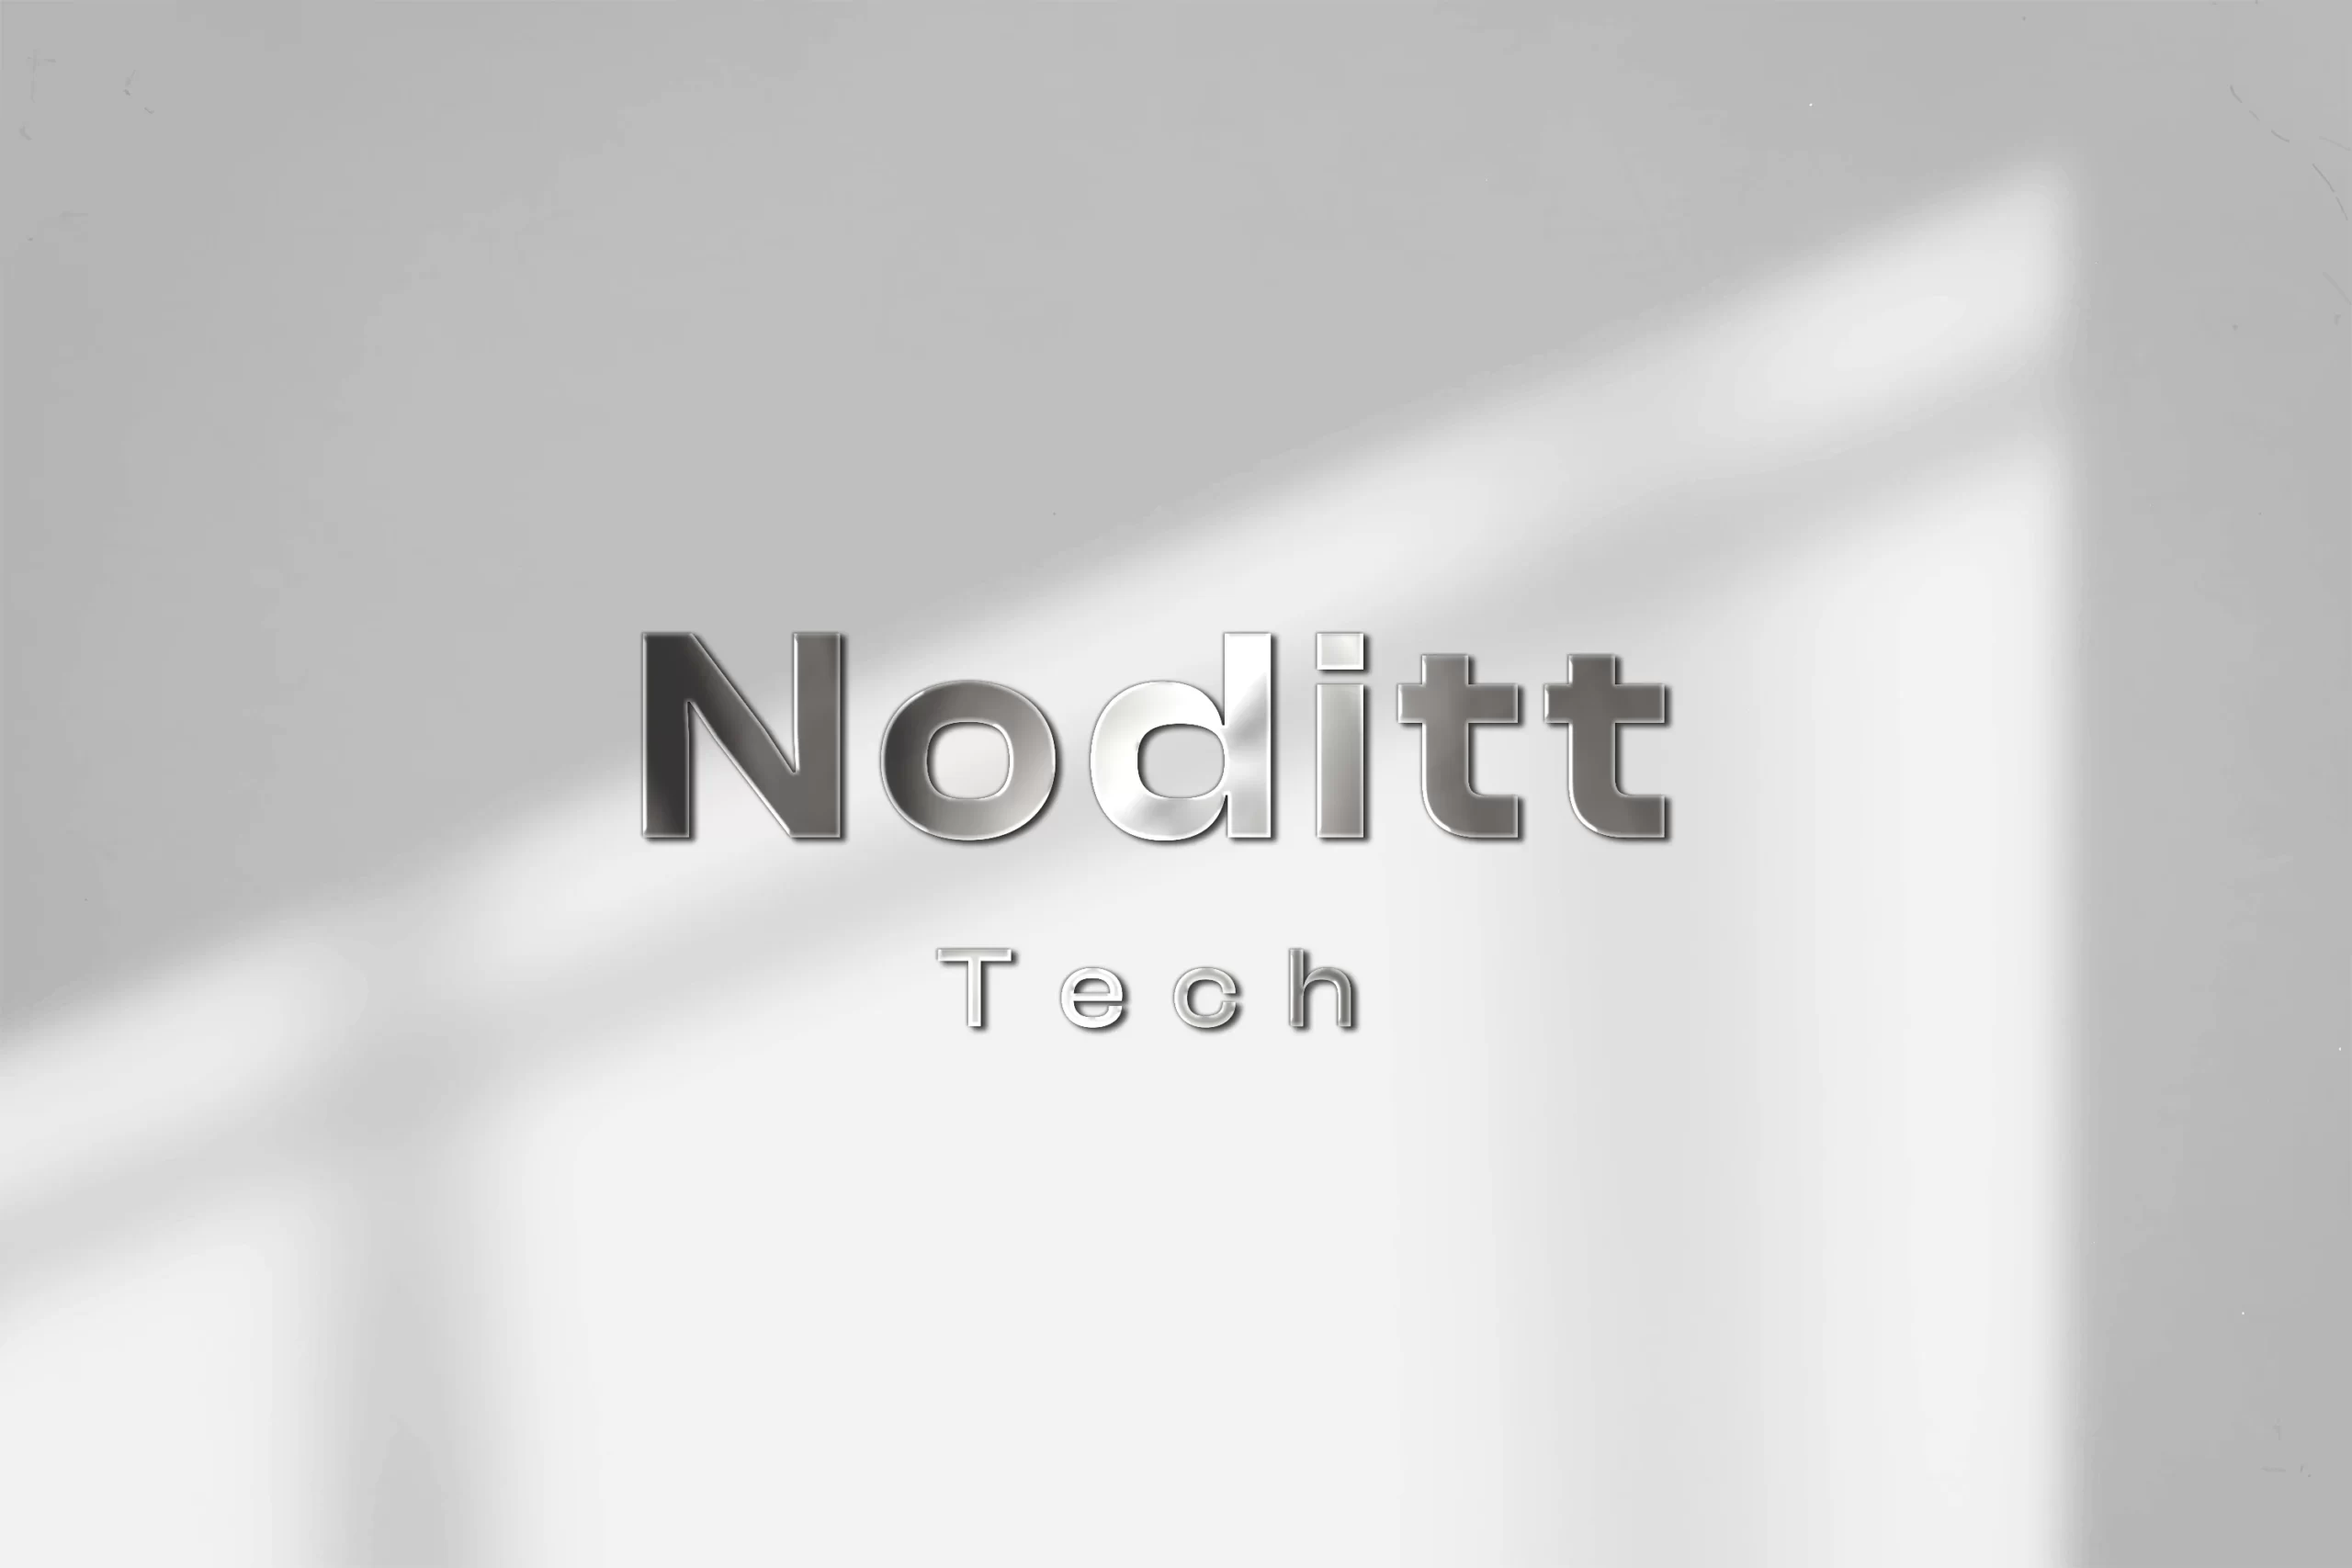 About Noditt Tech